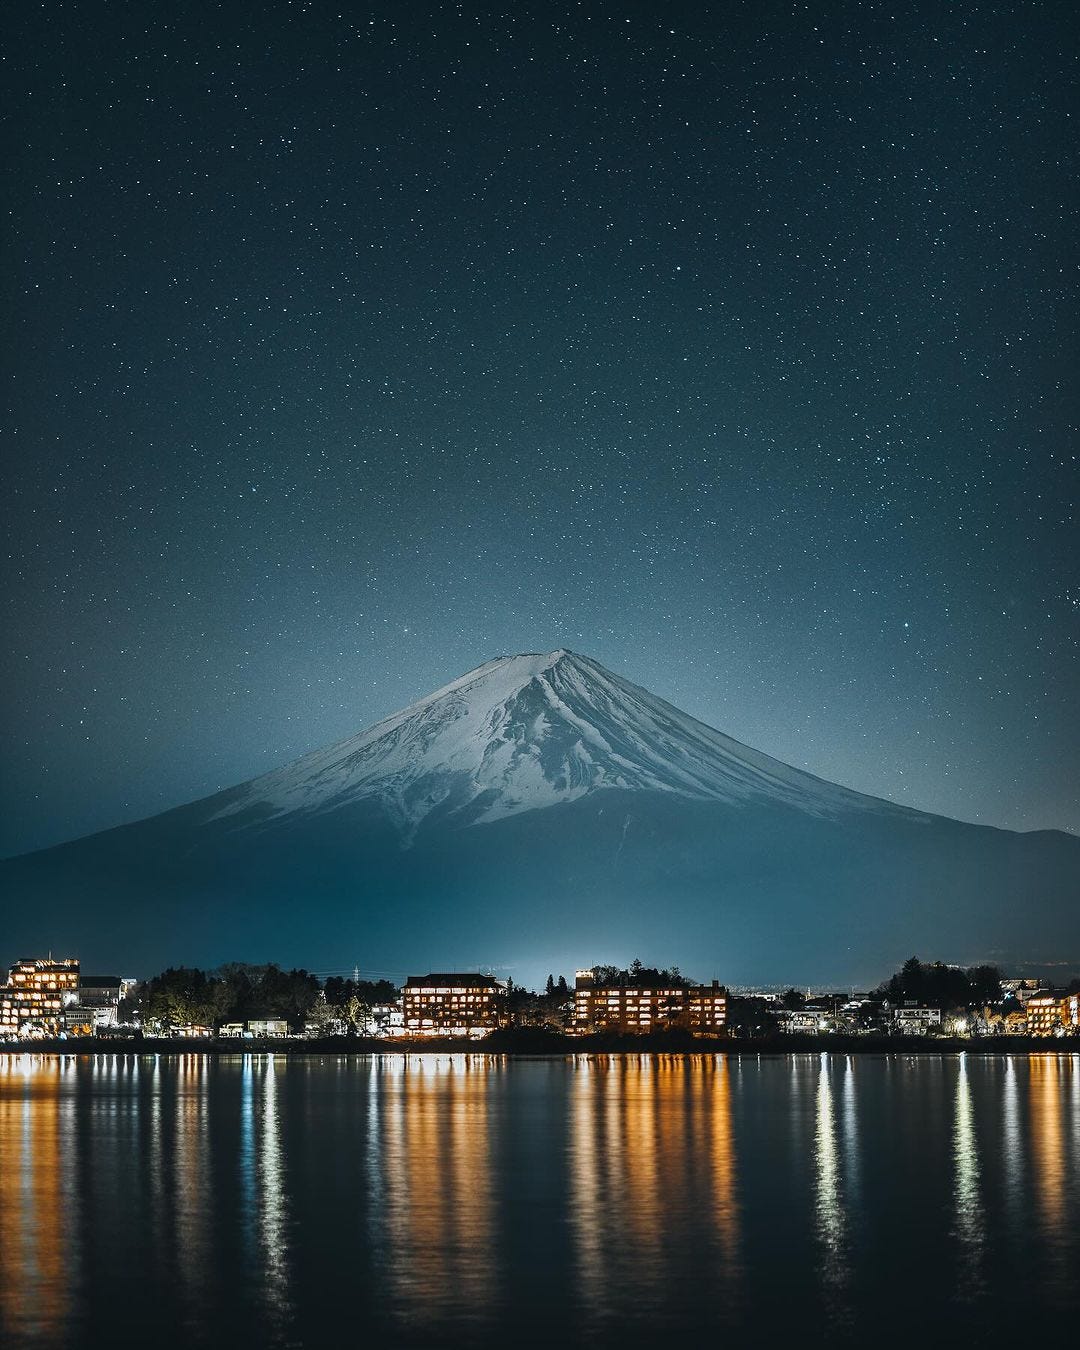 Fotografía del monte Fuji tomada por Luke Stackpoole